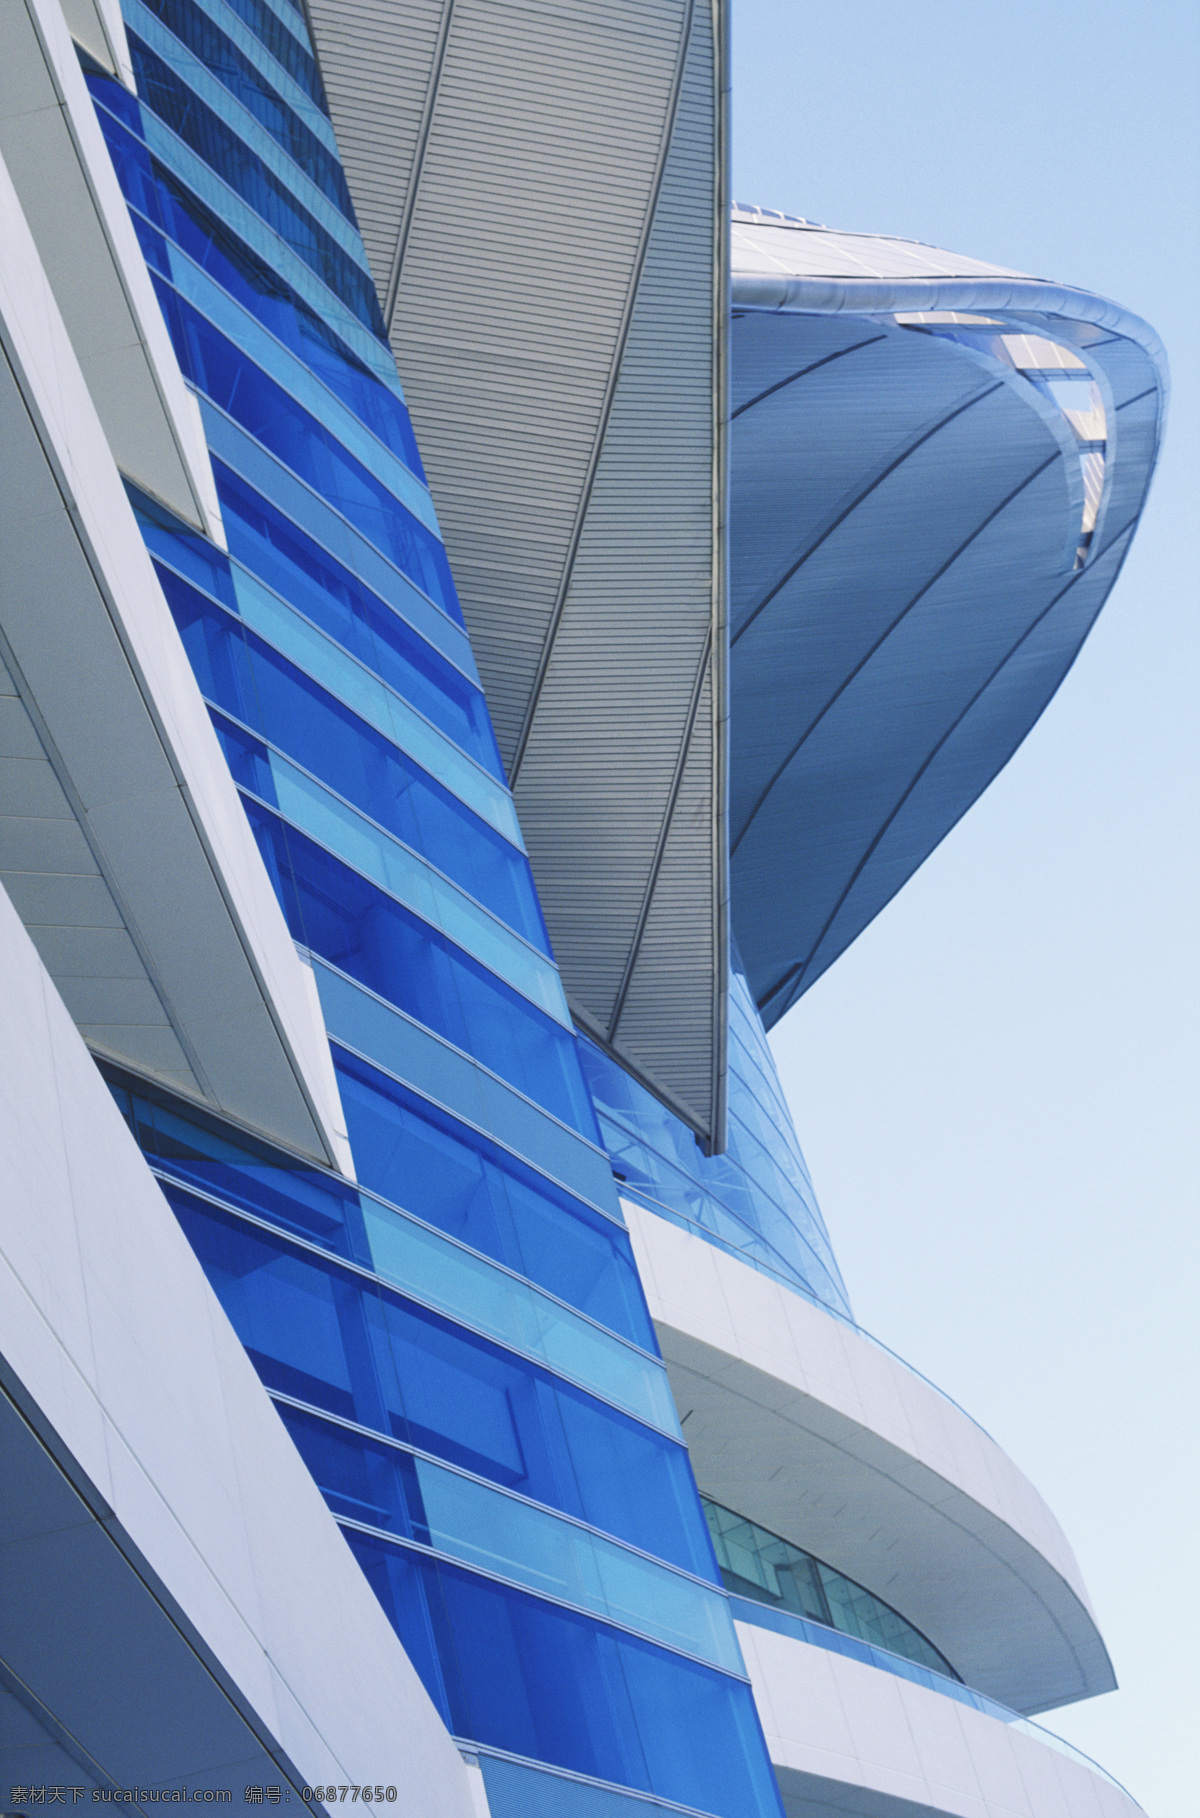 香港会议展览中心 香港 城市风光 高楼大厦 标志建筑 风景 繁华 繁荣 摄影图 高清图片 环境家居